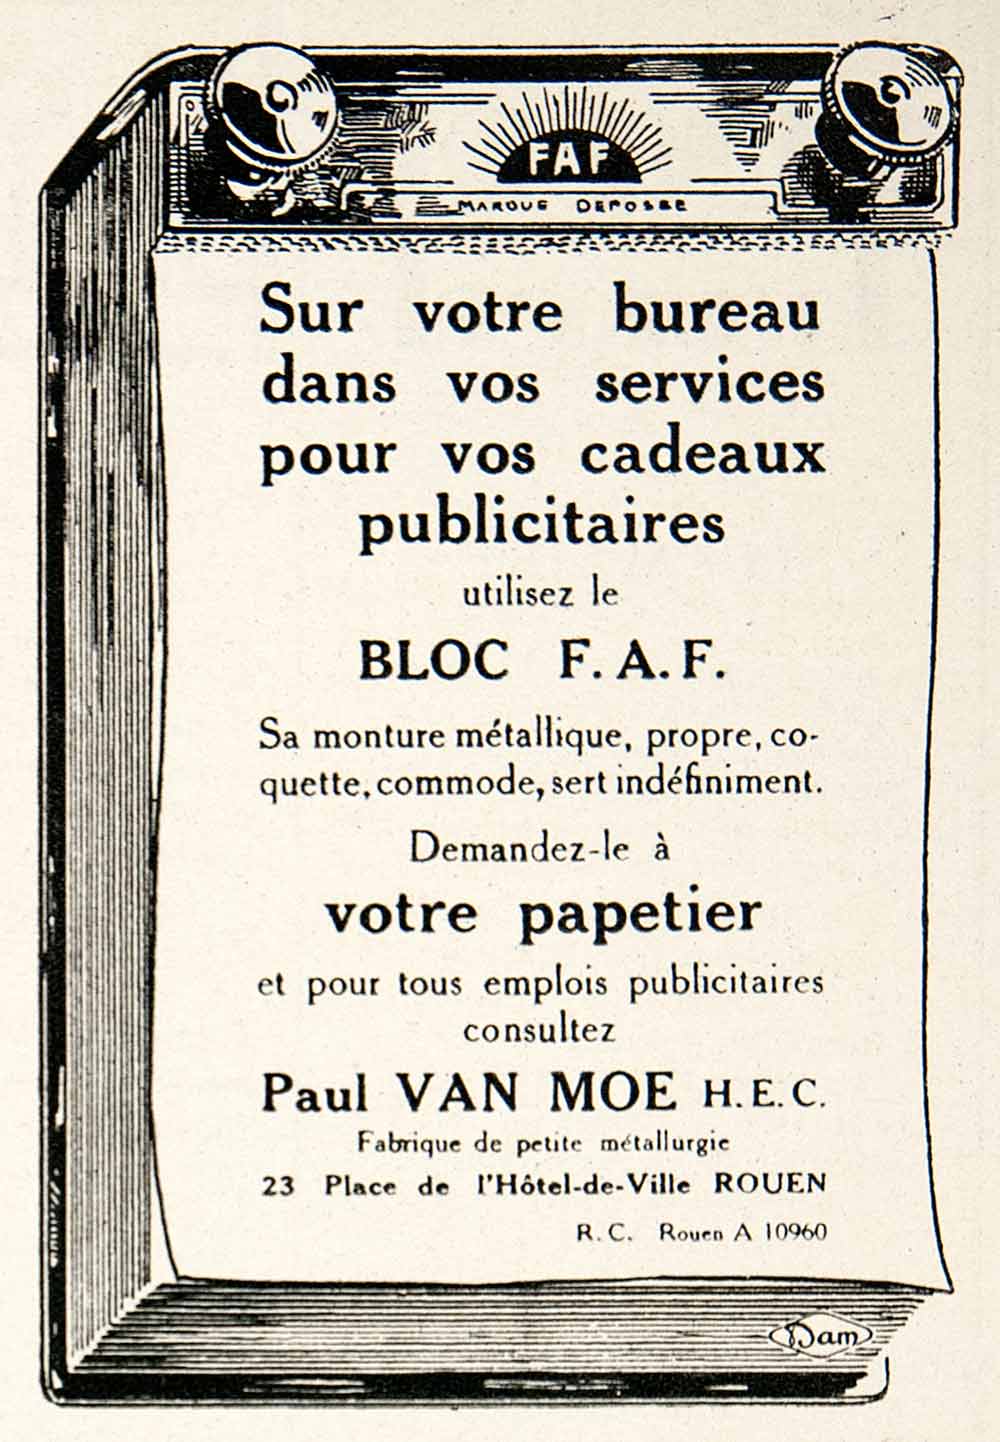 1924 Ad Bloc F.A.F. Paul Van Moe Stationary Notepad Noteblock 23 Hotel-de VEN3